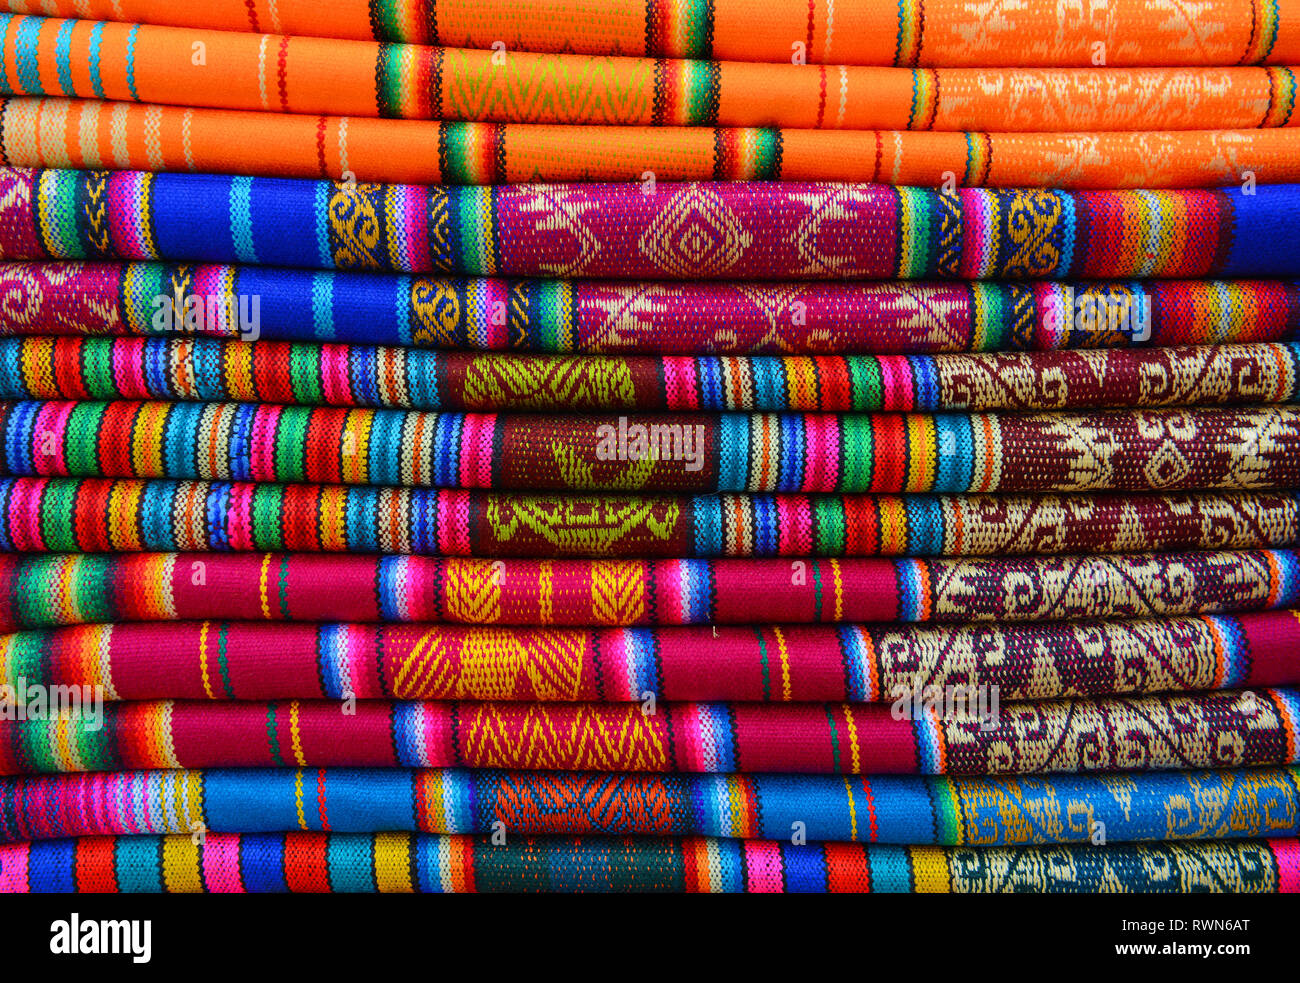 Pile de textiles colorés sur le marché indigène d'Otavalo, Équateur. Ces textiles peuvent être trouvés dans le monde andin : Pérou, Bolivie, Équateur. Banque D'Images